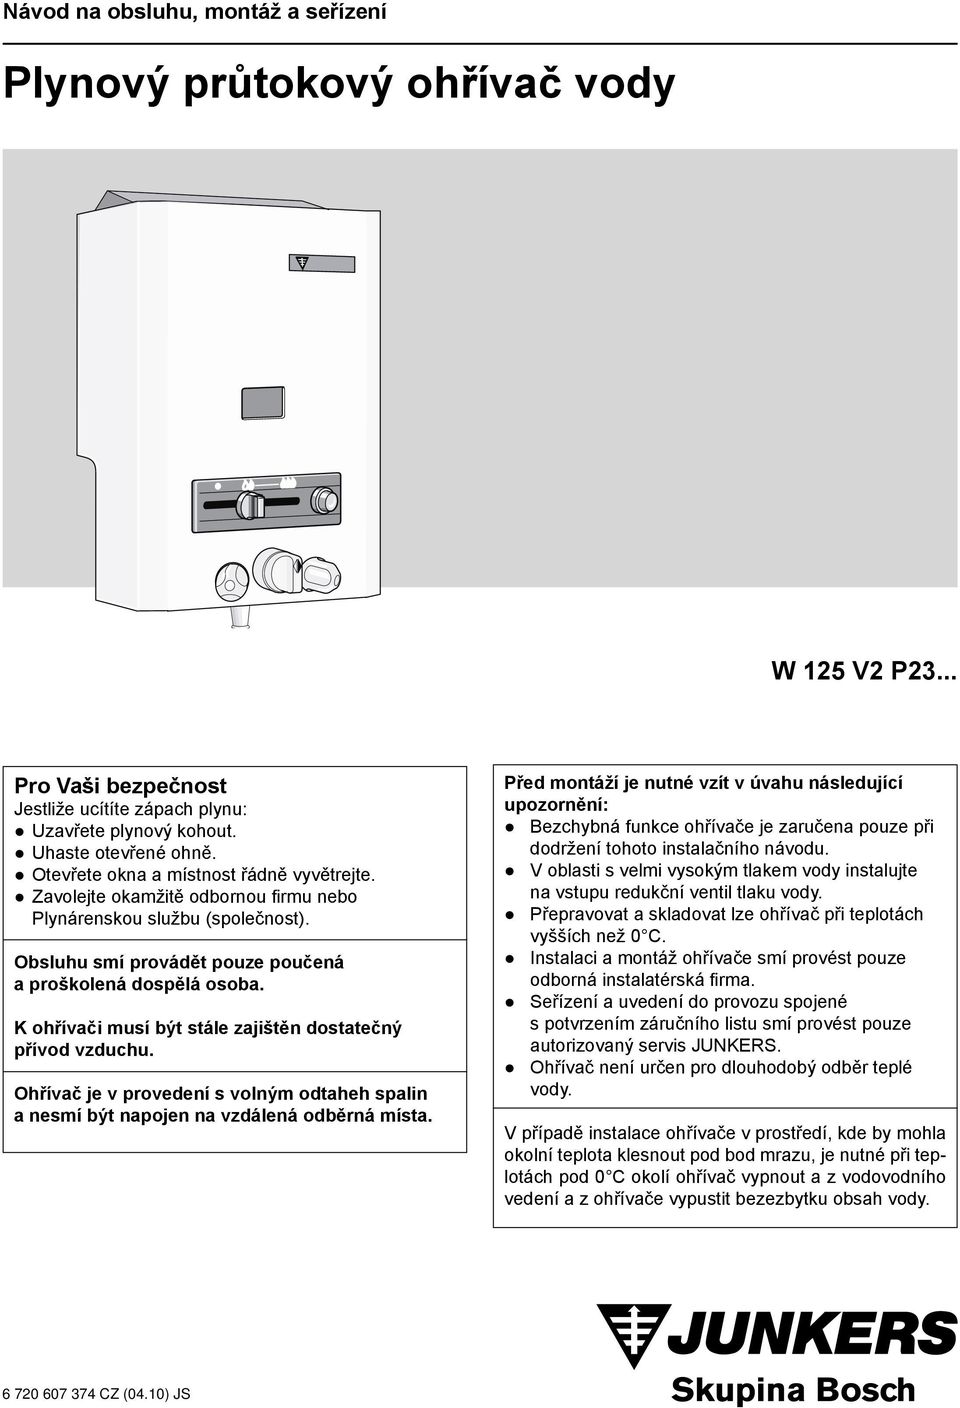 Plynový průtokový ohřívač vody - PDF Stažení zdarma